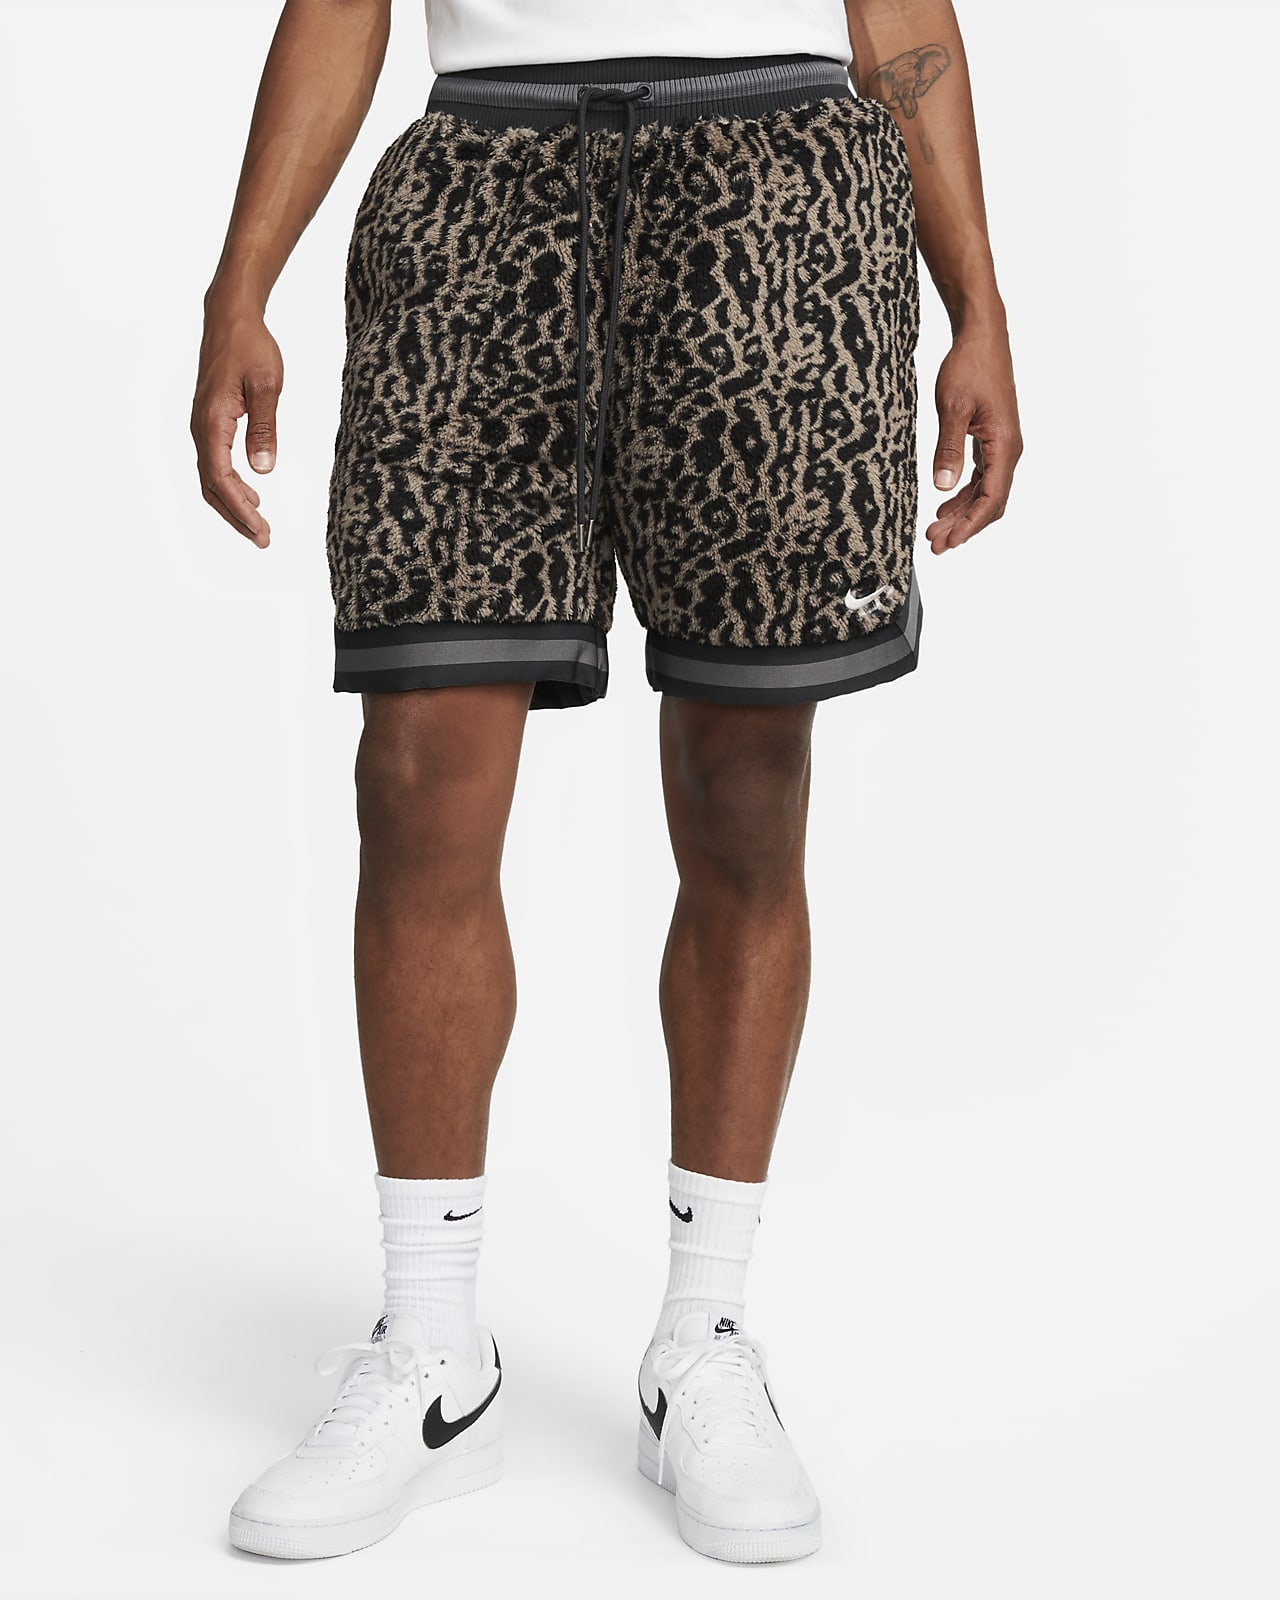 Mojado Paternal Carrera Shorts de básquetbol premium de 15 cm para hombre Nike. Nike.com